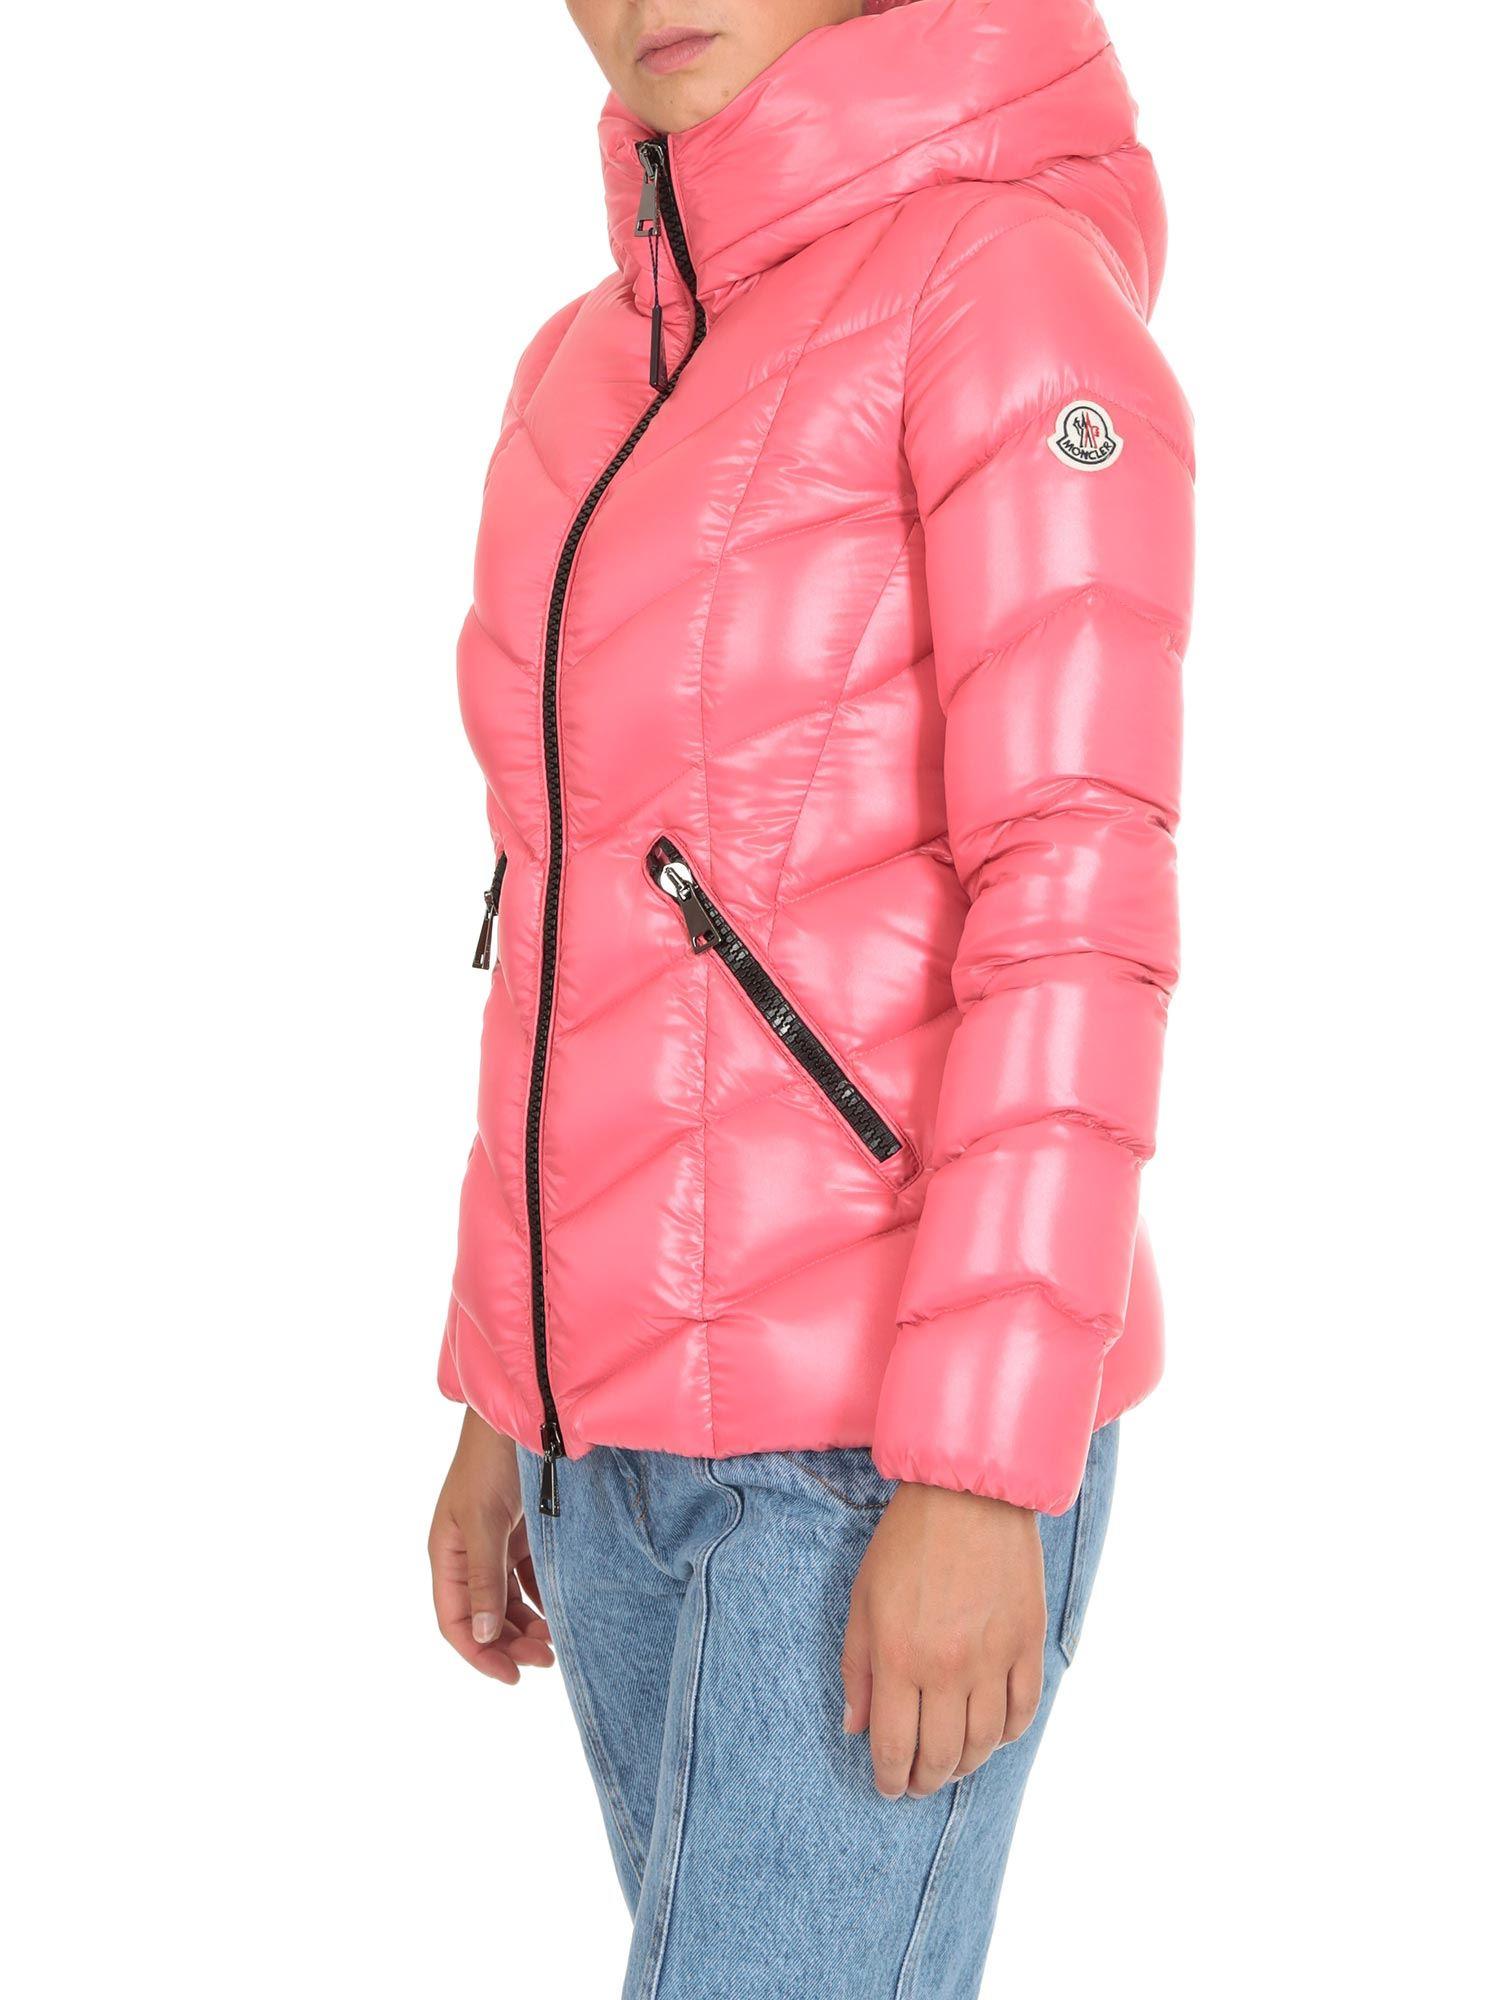 moncler fulig jacket, Off 66%, www.spotsclick.com